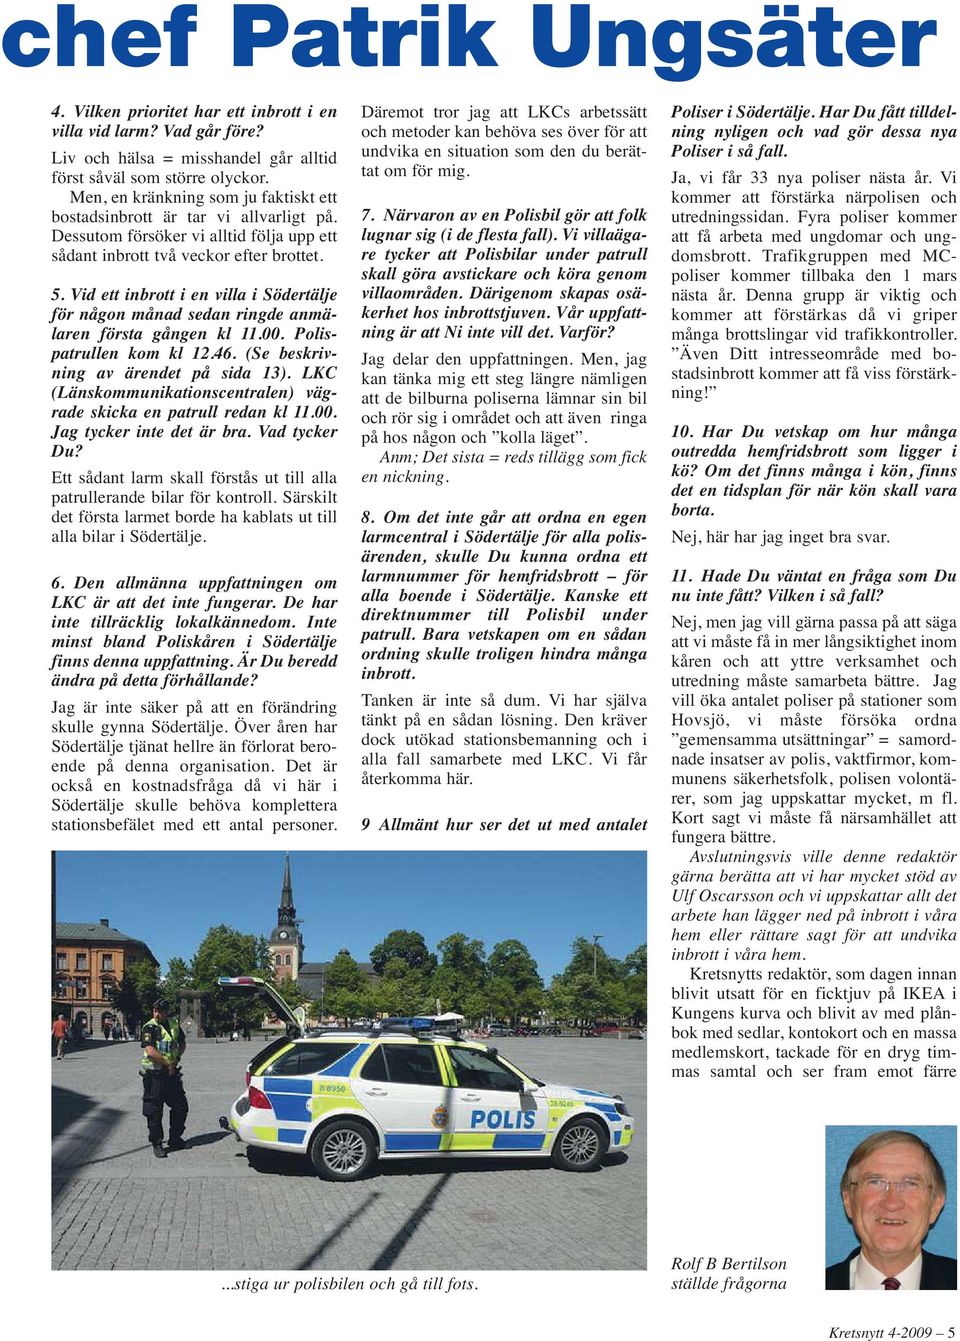 Vid ett inbrott i en villa i Södertälje för någon månad sedan ringde anmälaren första gången kl 11.00. Polis - patrullen kom kl 12.46. (Se beskrivning av ärendet på sida 13).